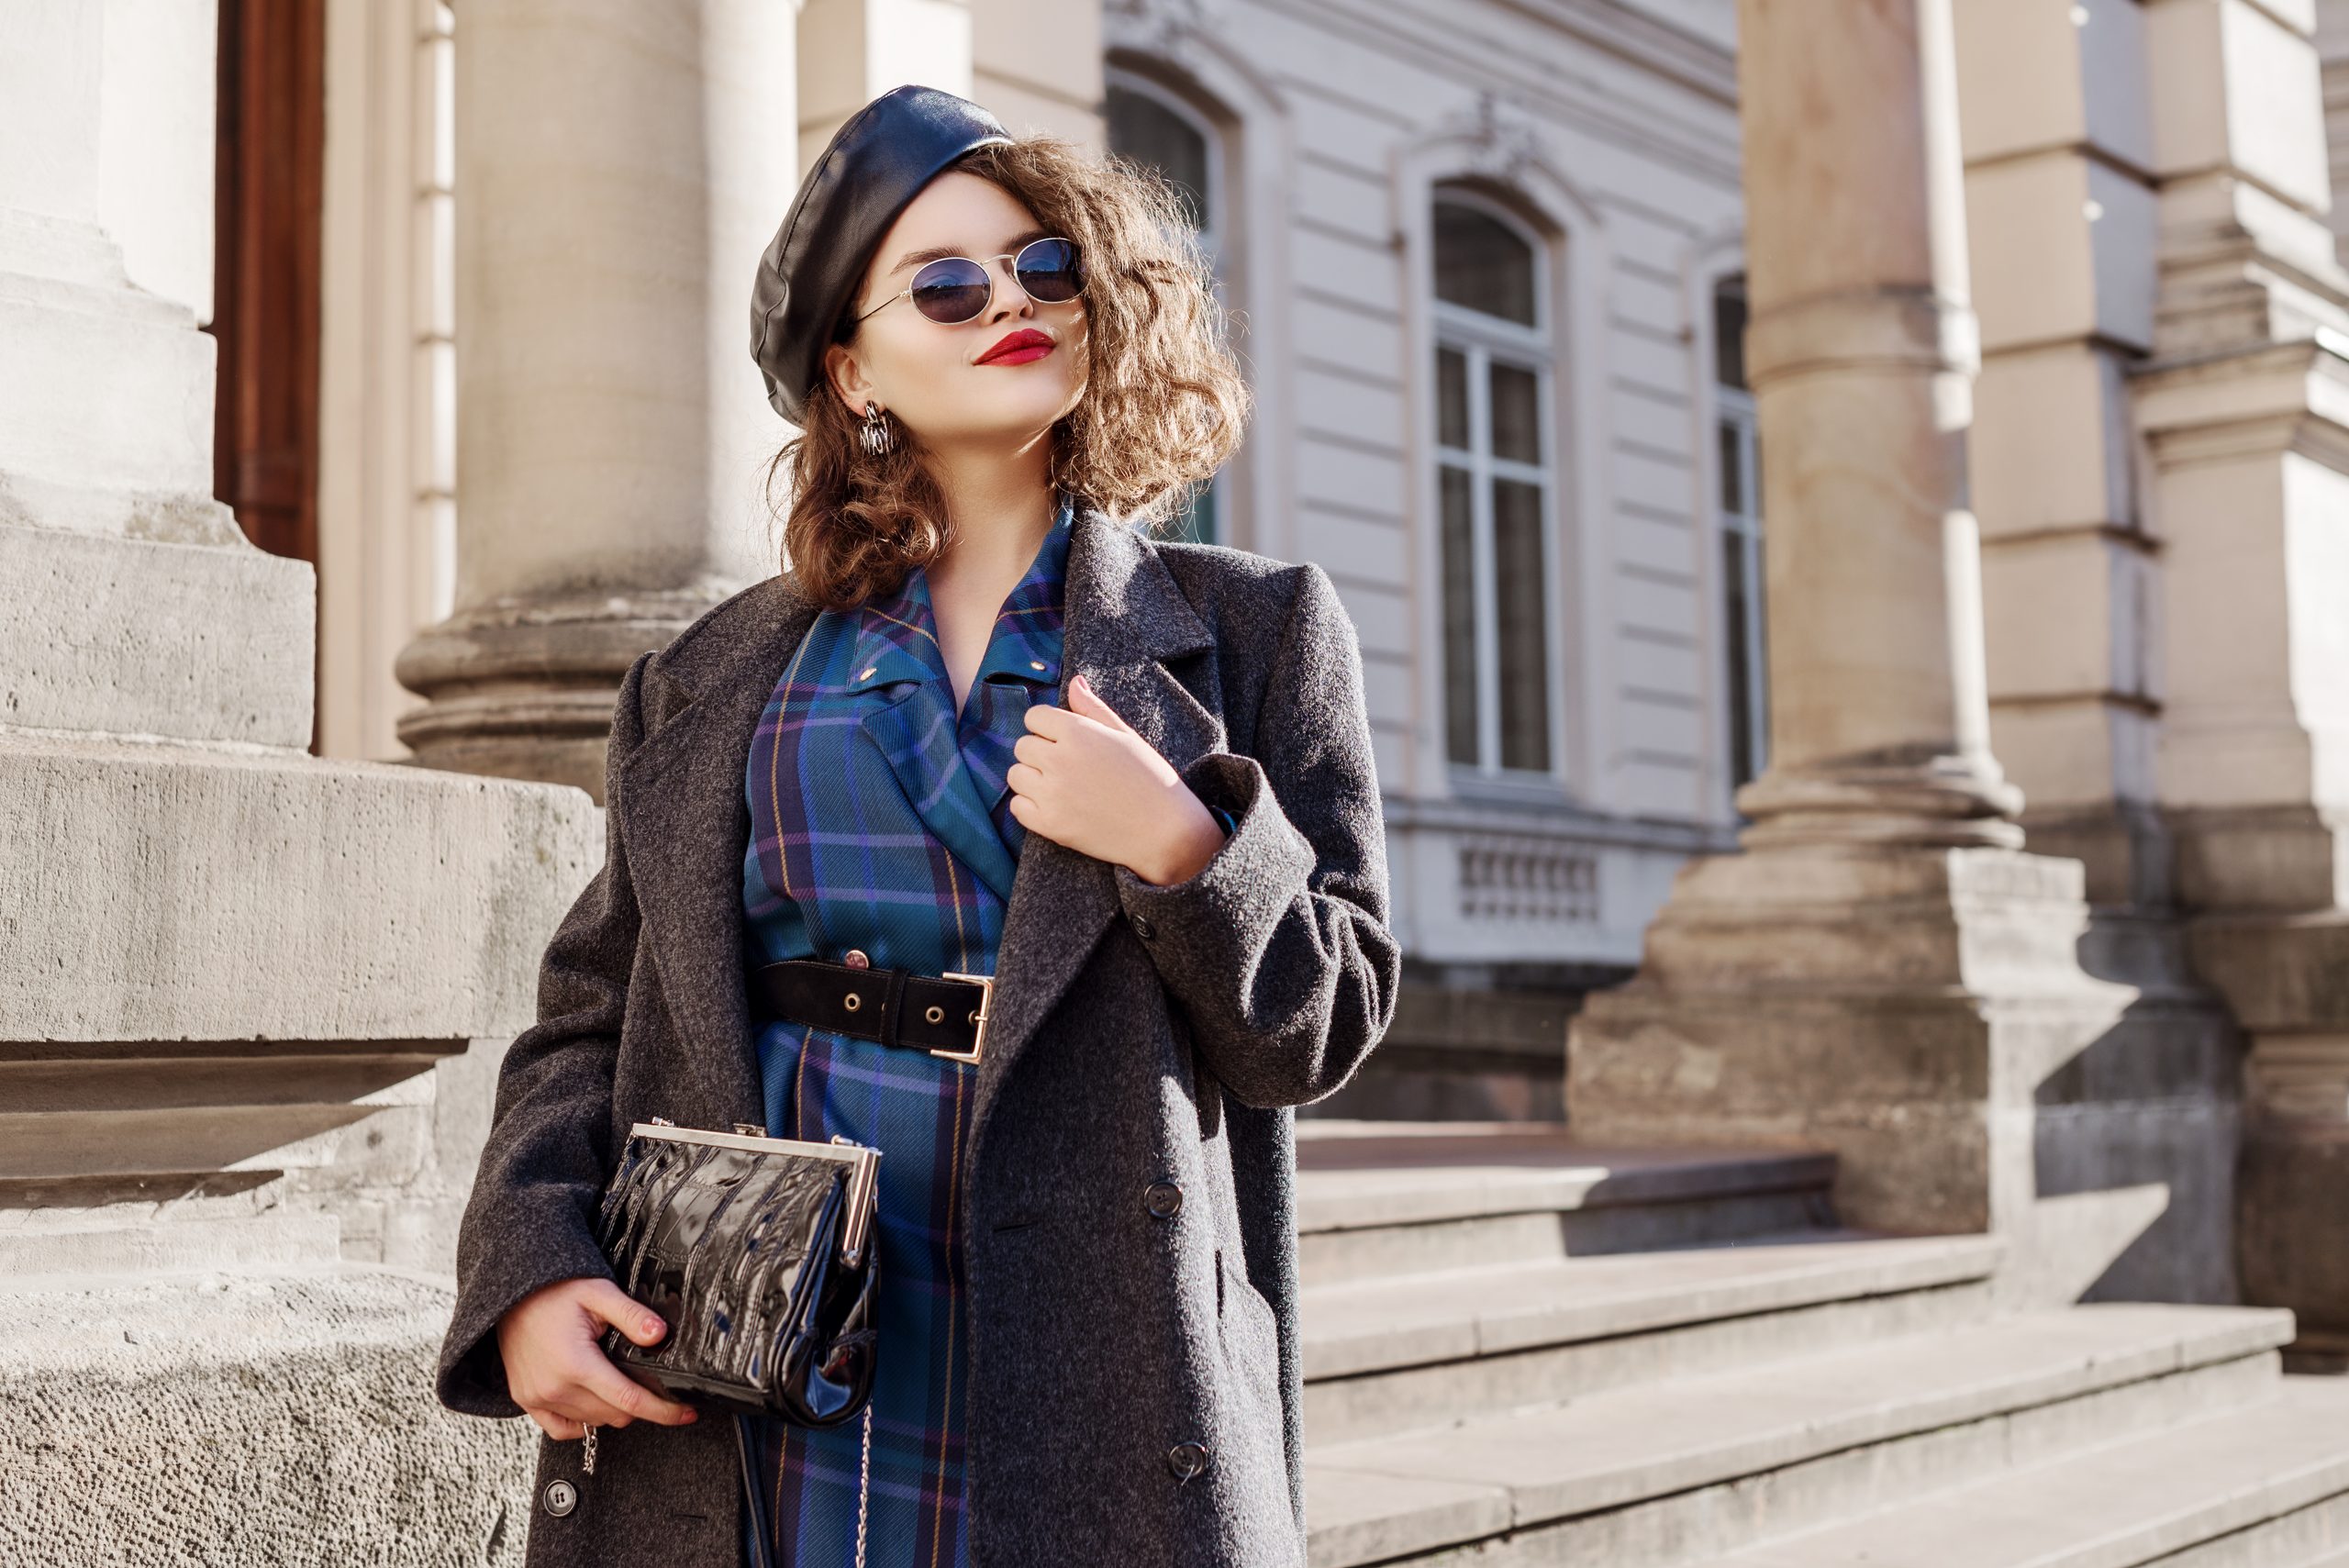 Outdoor Modeporträt von jungen schönen modischen Mädchen mit blauem Schachkleid, grauem Mantel, Lederbeet, Sonnenbrille, halten kleine Tasche, posieren in der europäischen Stadt. Kopieren, Leerraum